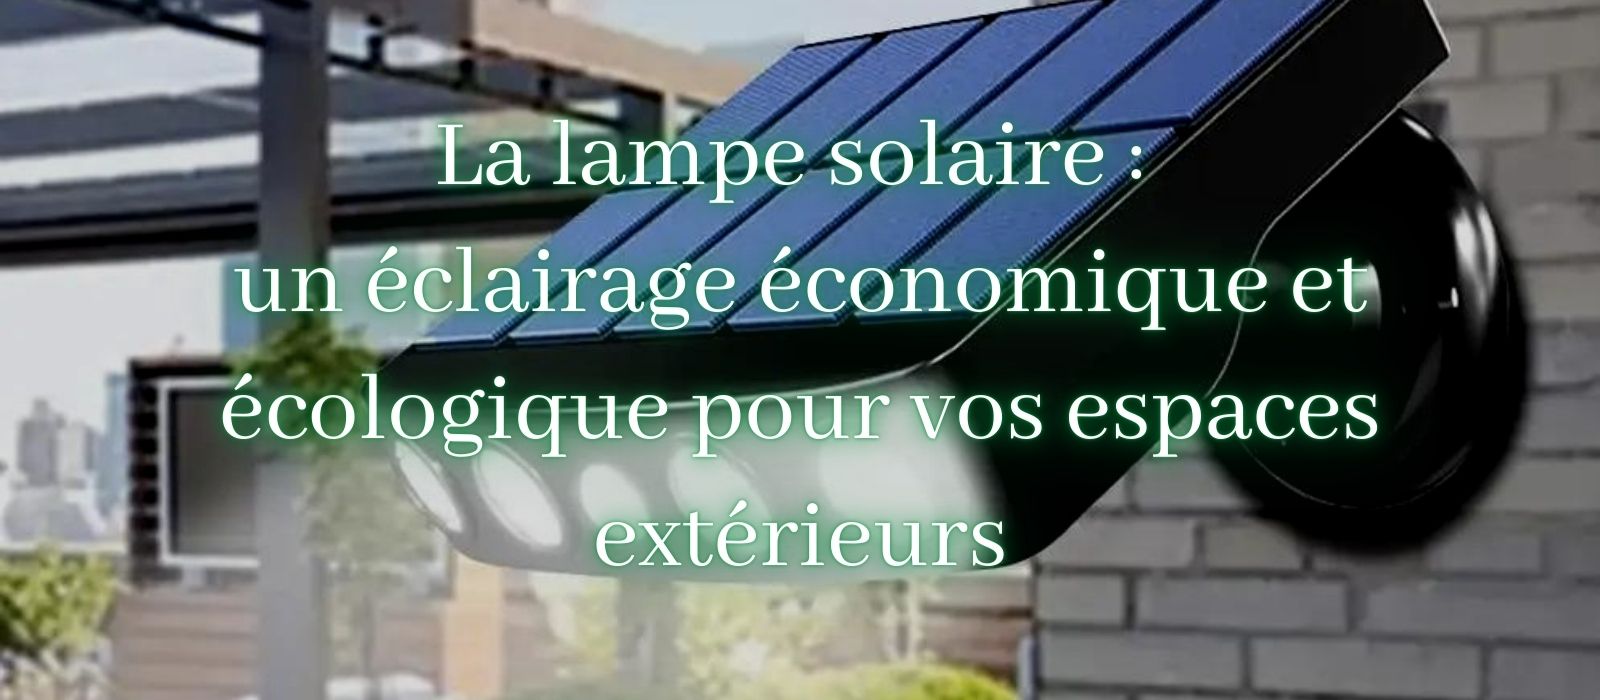 applique murale solaire eclairage economique et ecologique